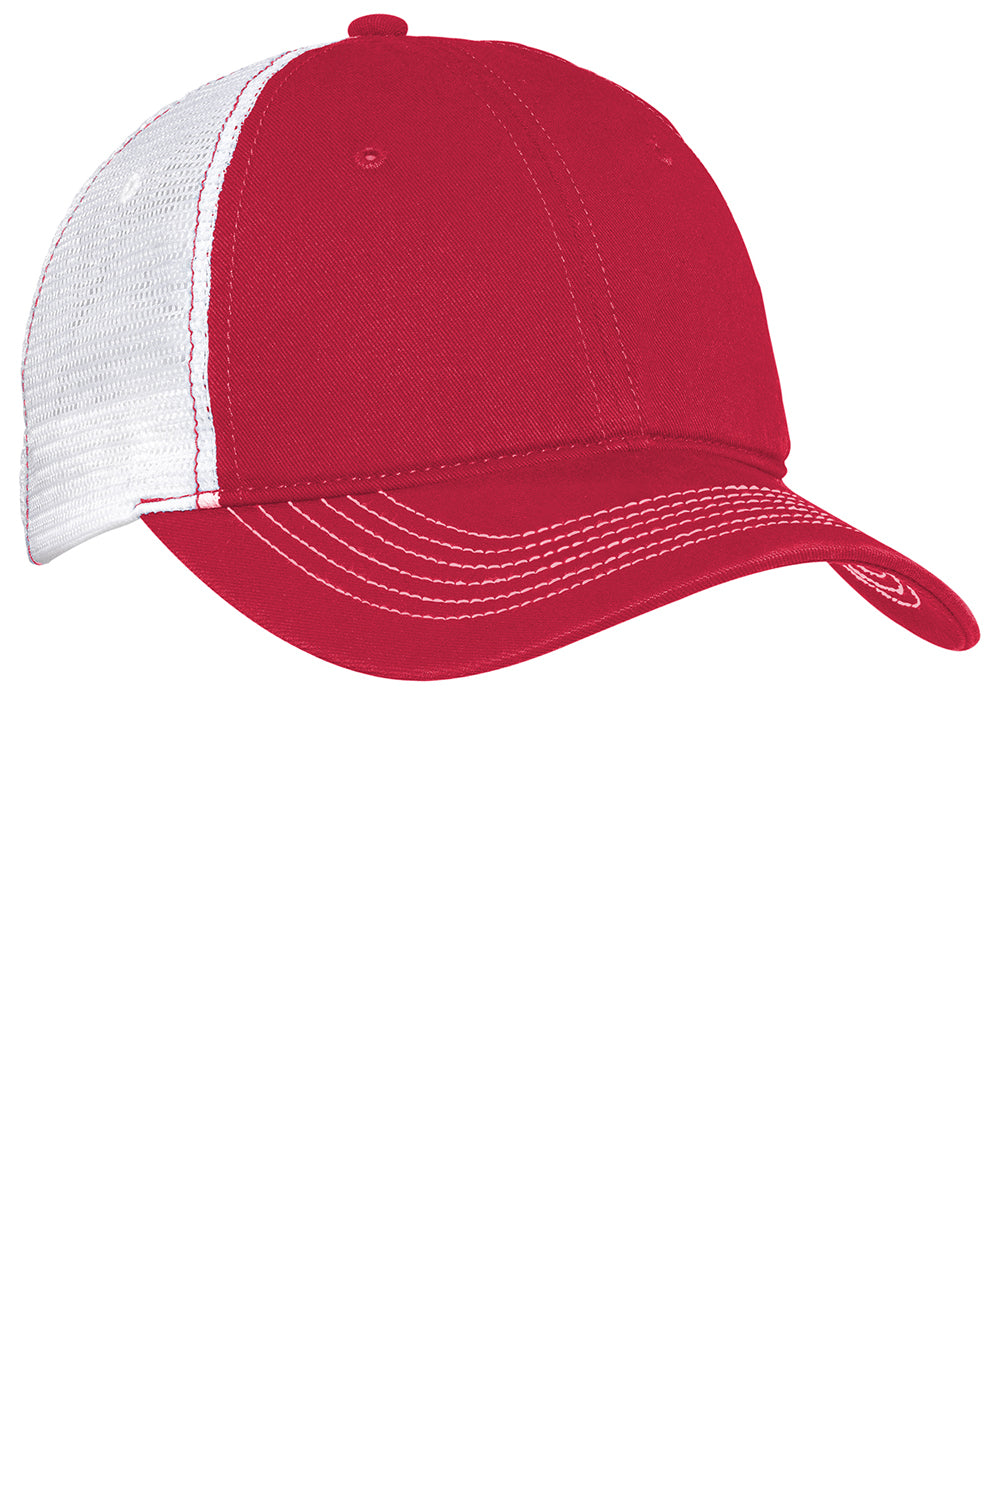 District DT607 Mens Adjustable Hat Red Front